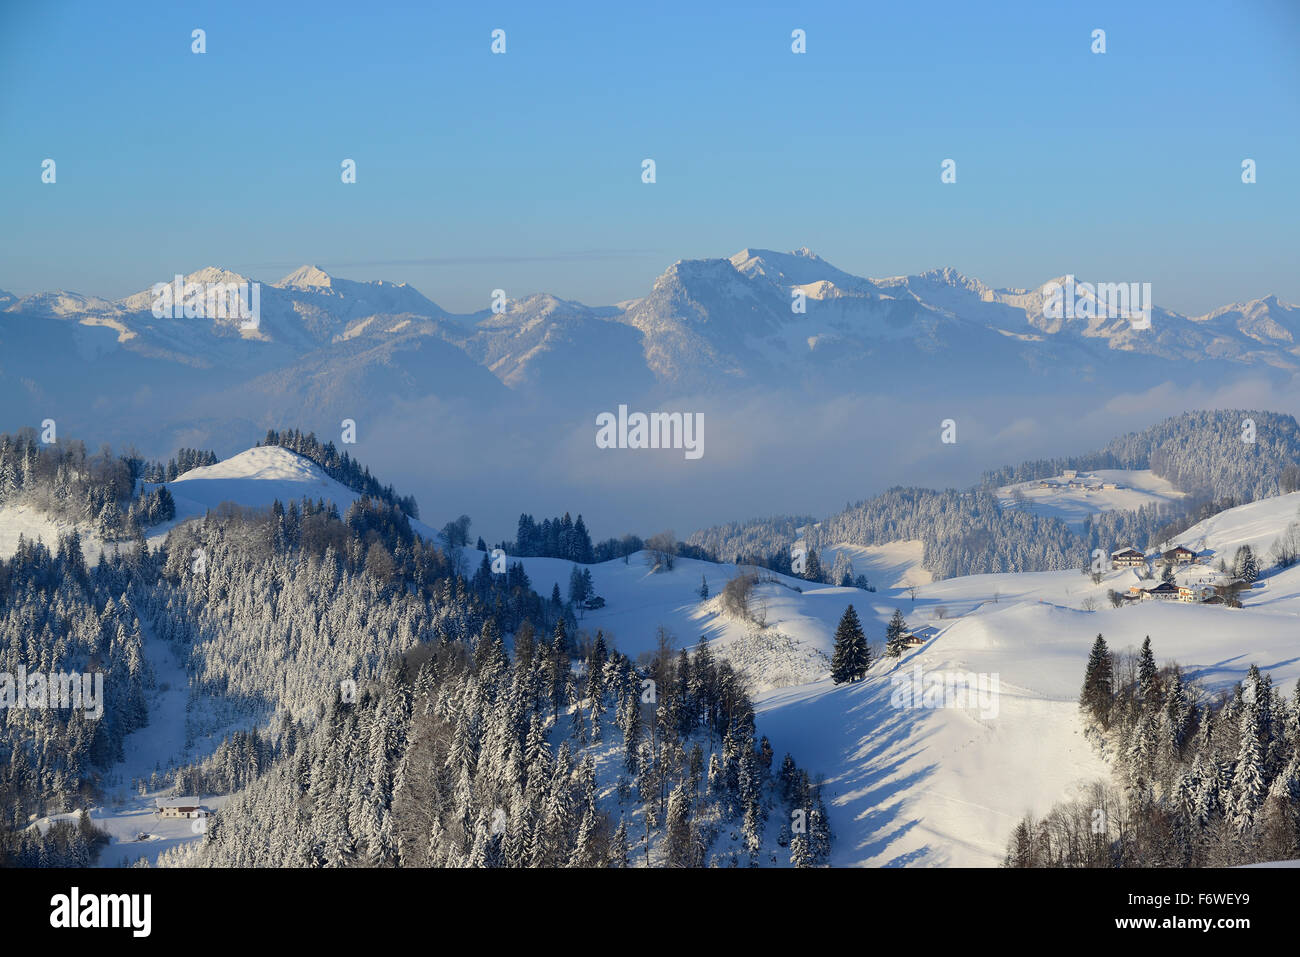 Verschneiten Alpen auf Brennkopf, Mangfall Bereich im Hintergrund, Brennkopf, Chiemgau-Bereich, Tirol, Österreich Stockfoto